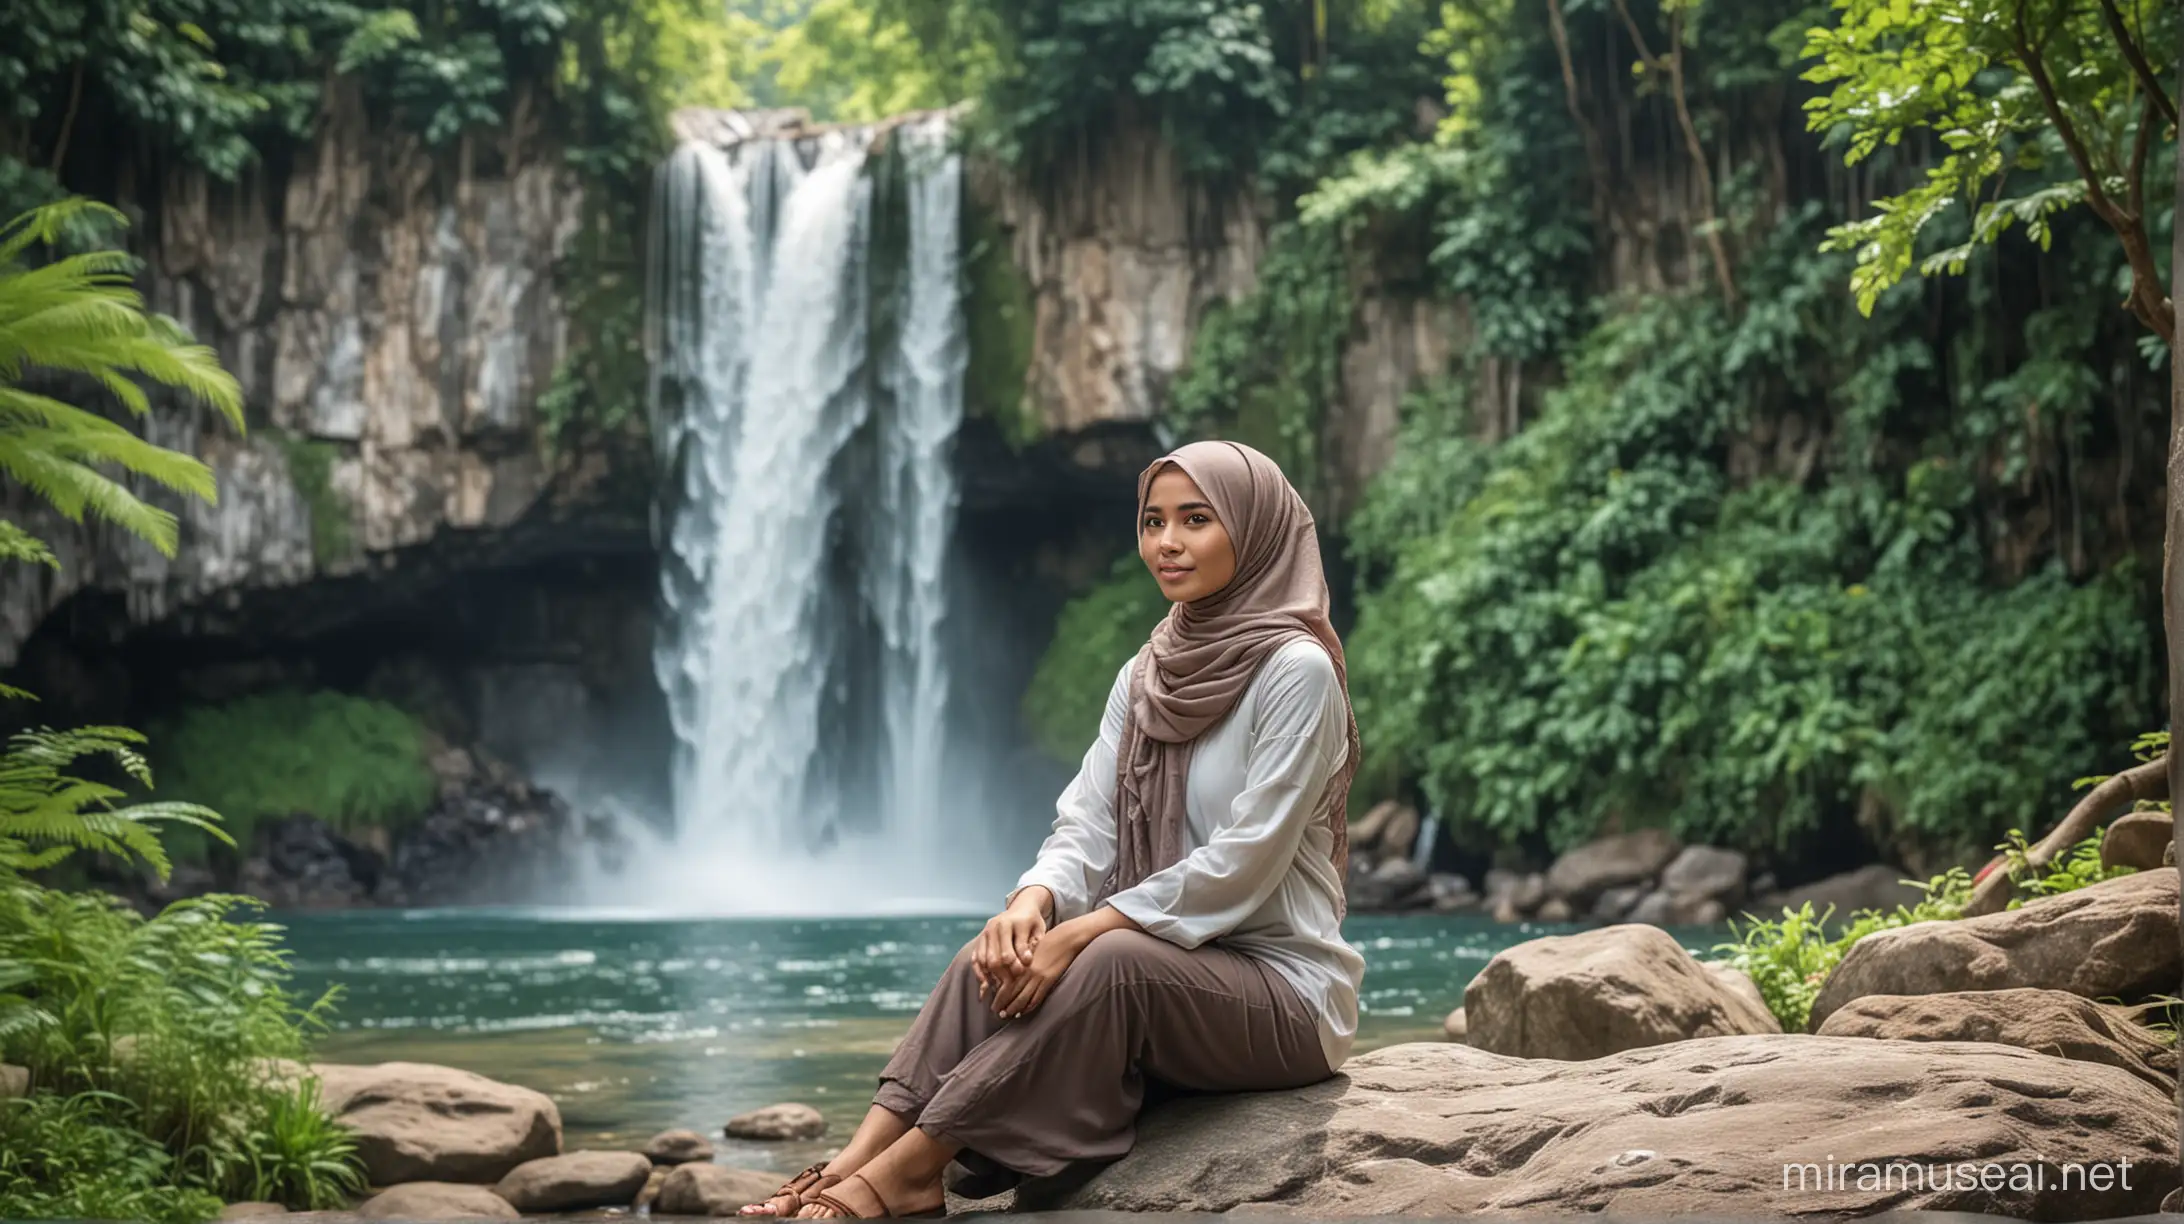 Seorang wanita cantik muslim Indonesia sedang duduk di atas batu,clos up,background air terjun yg indah, dengan pepohonan yg Rindang dan subur, realistis ultra HDR extreme 